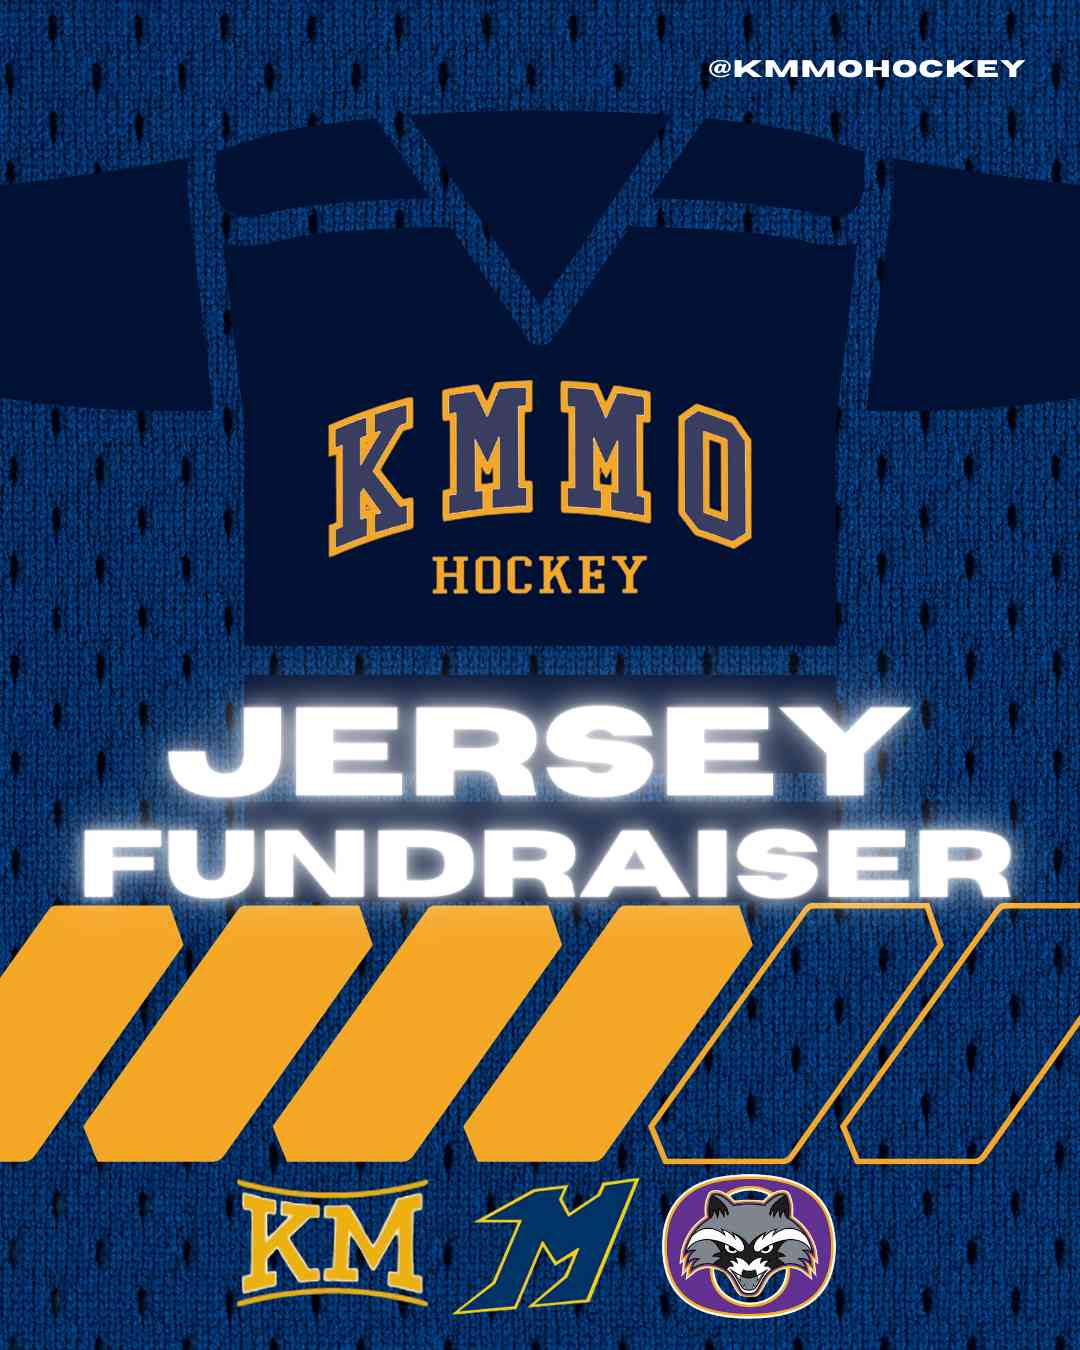 KMMO Boys Hockey Donation Campaign Image